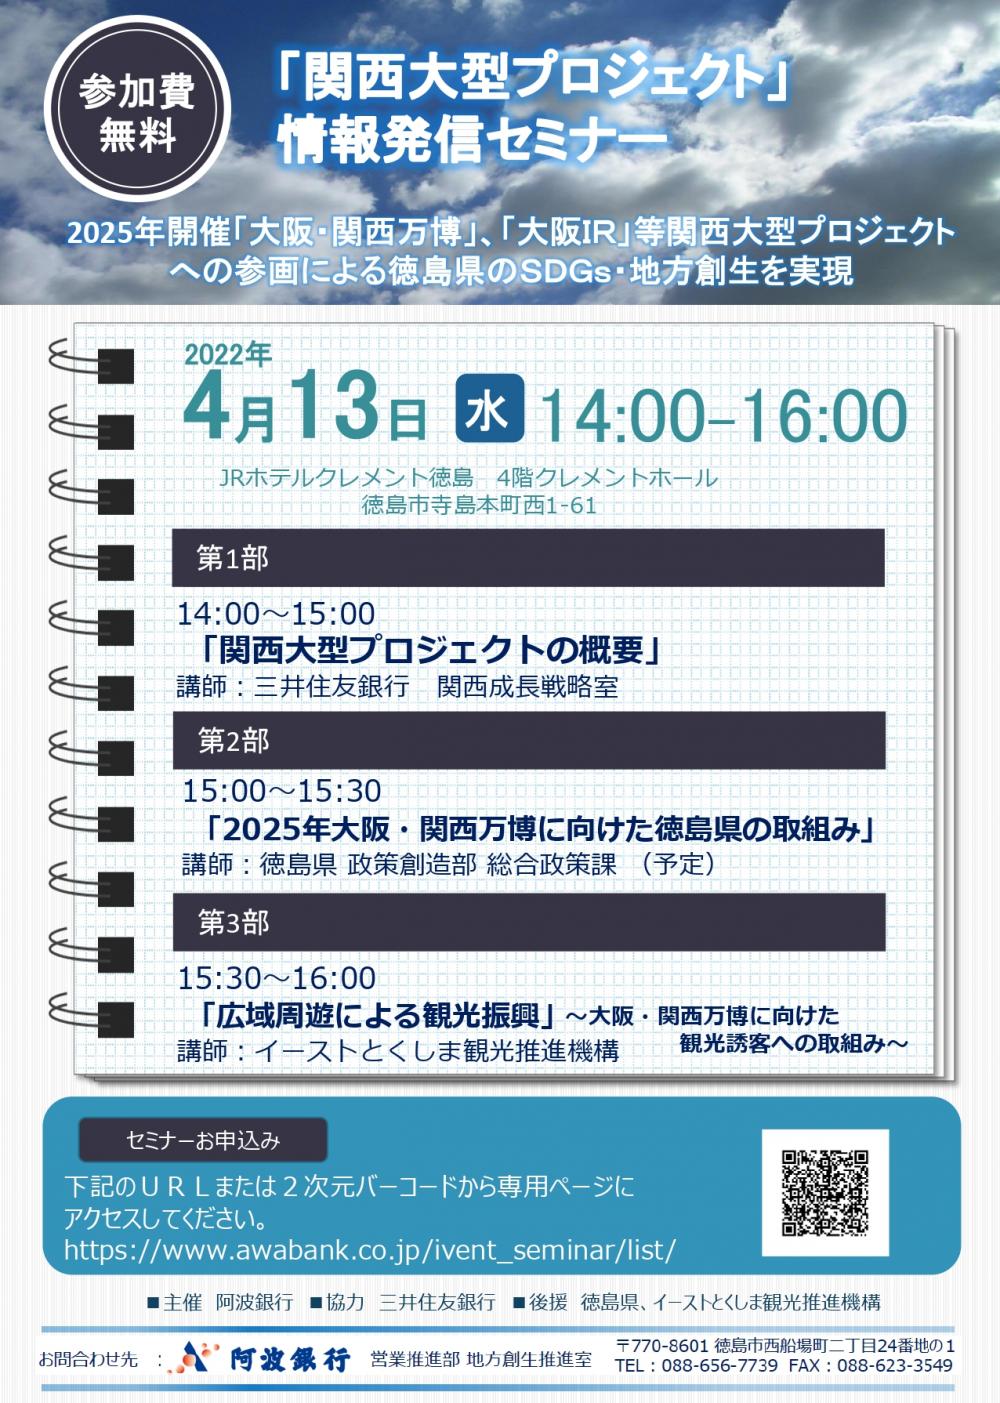 「関西大型プロジェクト」情報発信セミナーの開催について(徳島会場、大阪会場)